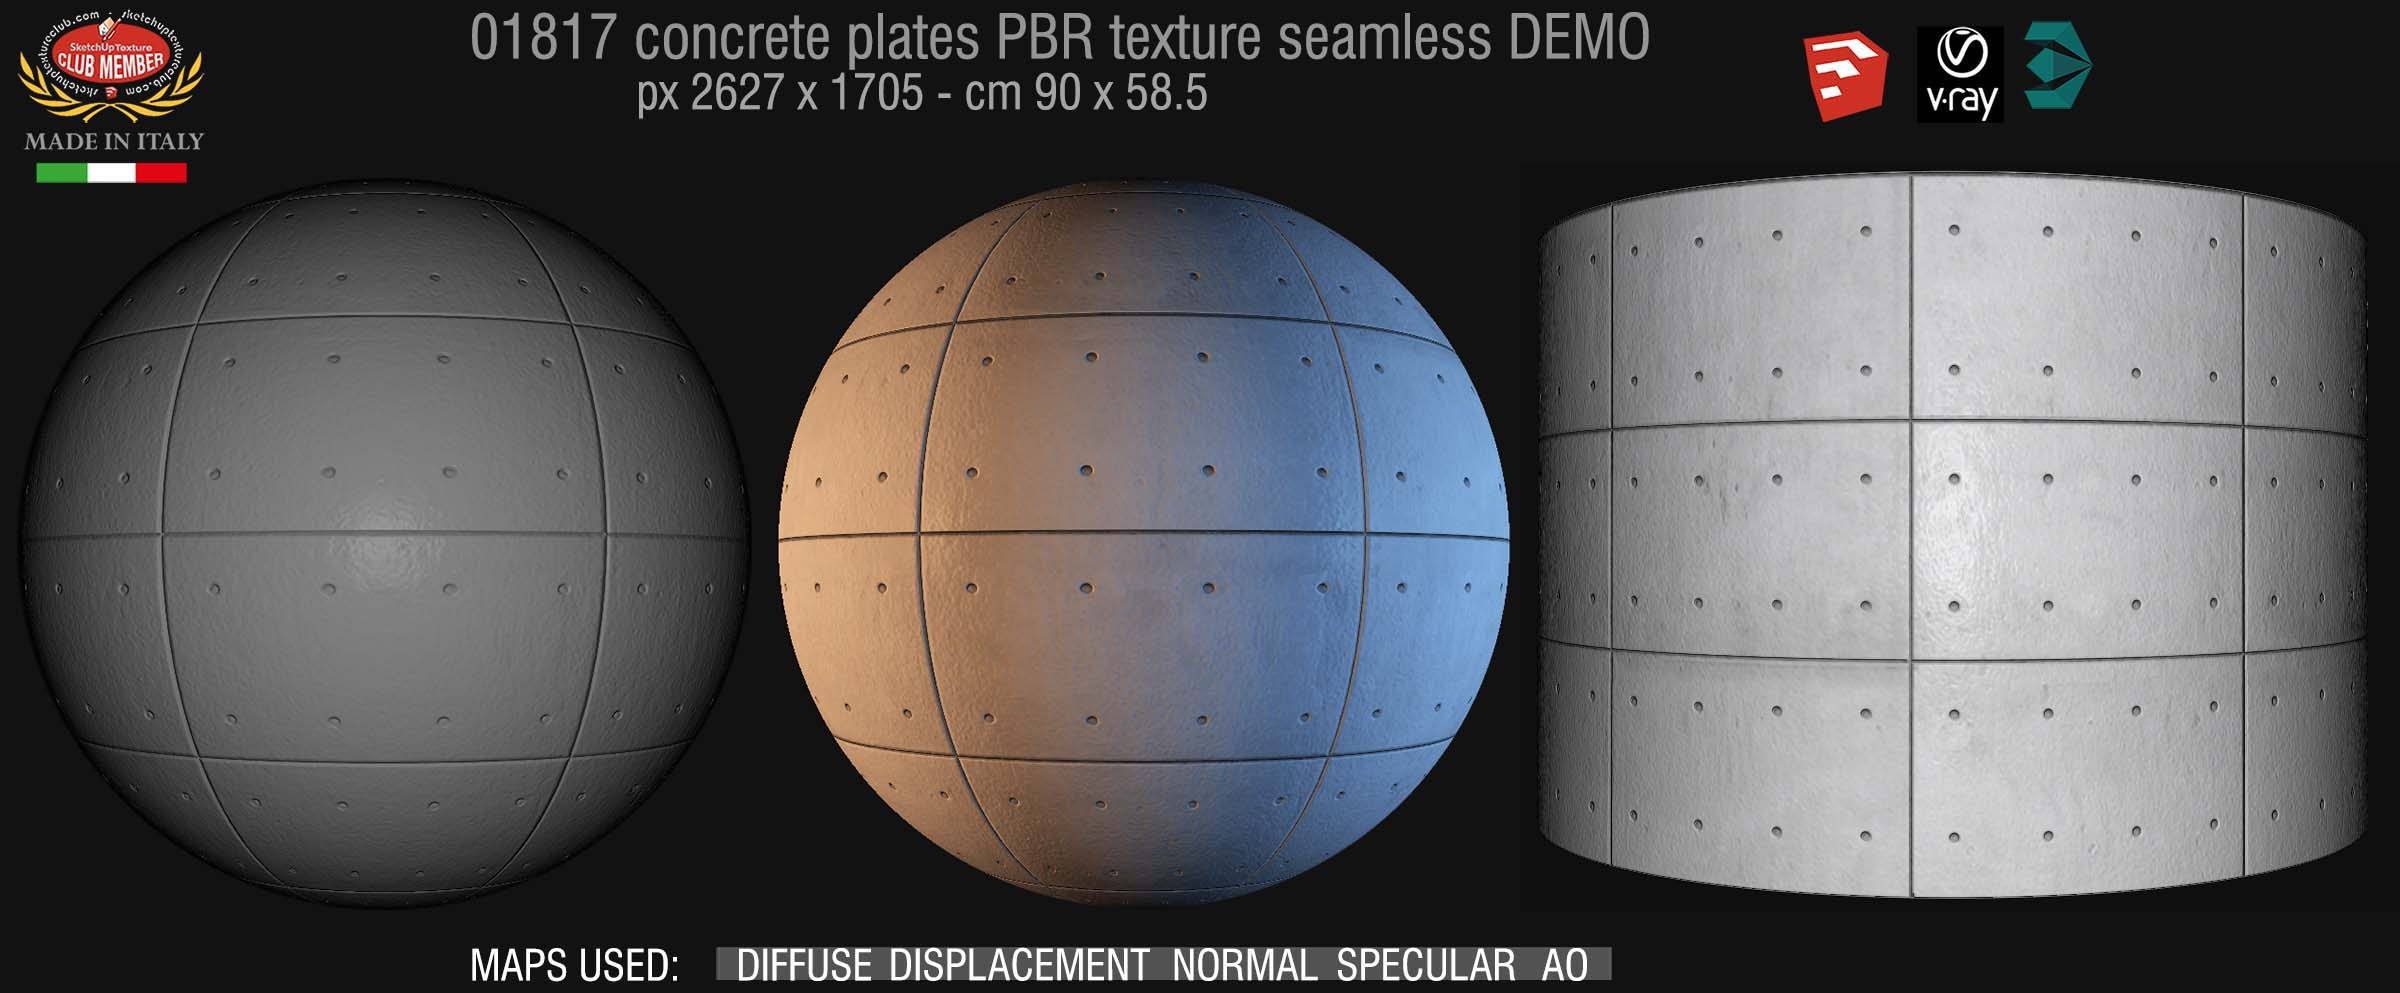 01817 Tadao Ando concrete plates PBR texture seamless DEMO